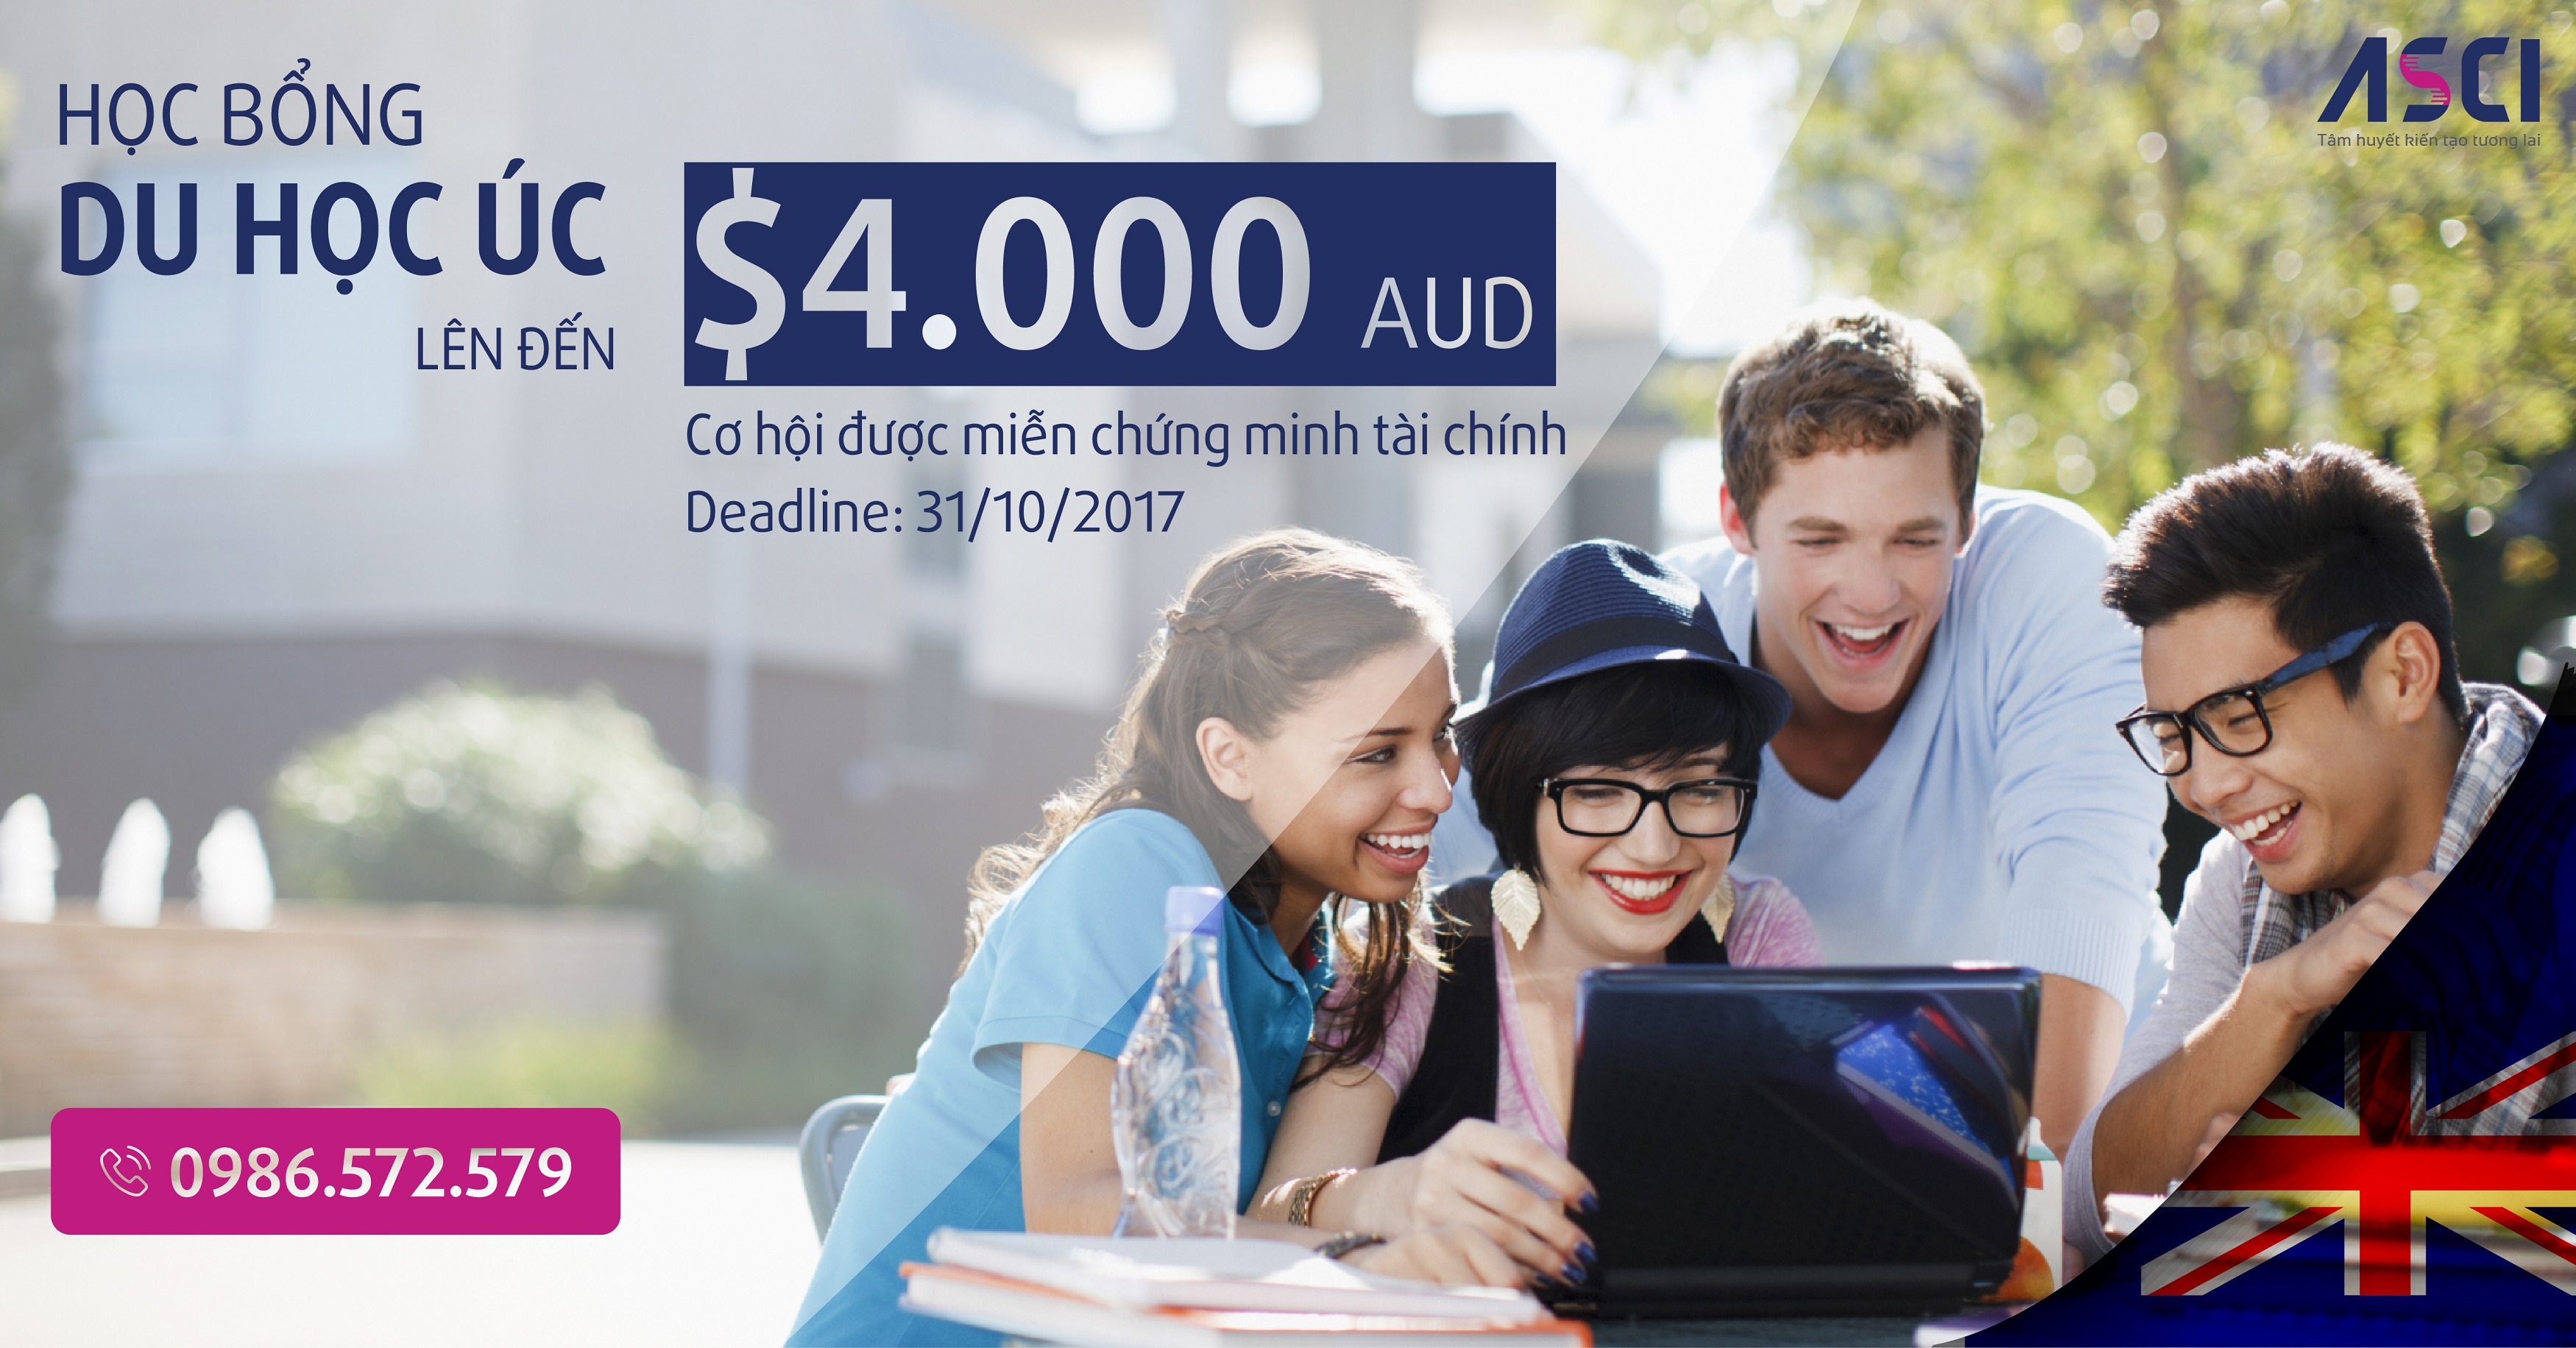 Chắp cánh du học Úc với học bổng lên đến $4.000 AUD cùng Tập đoàn Giáo dục Navitas